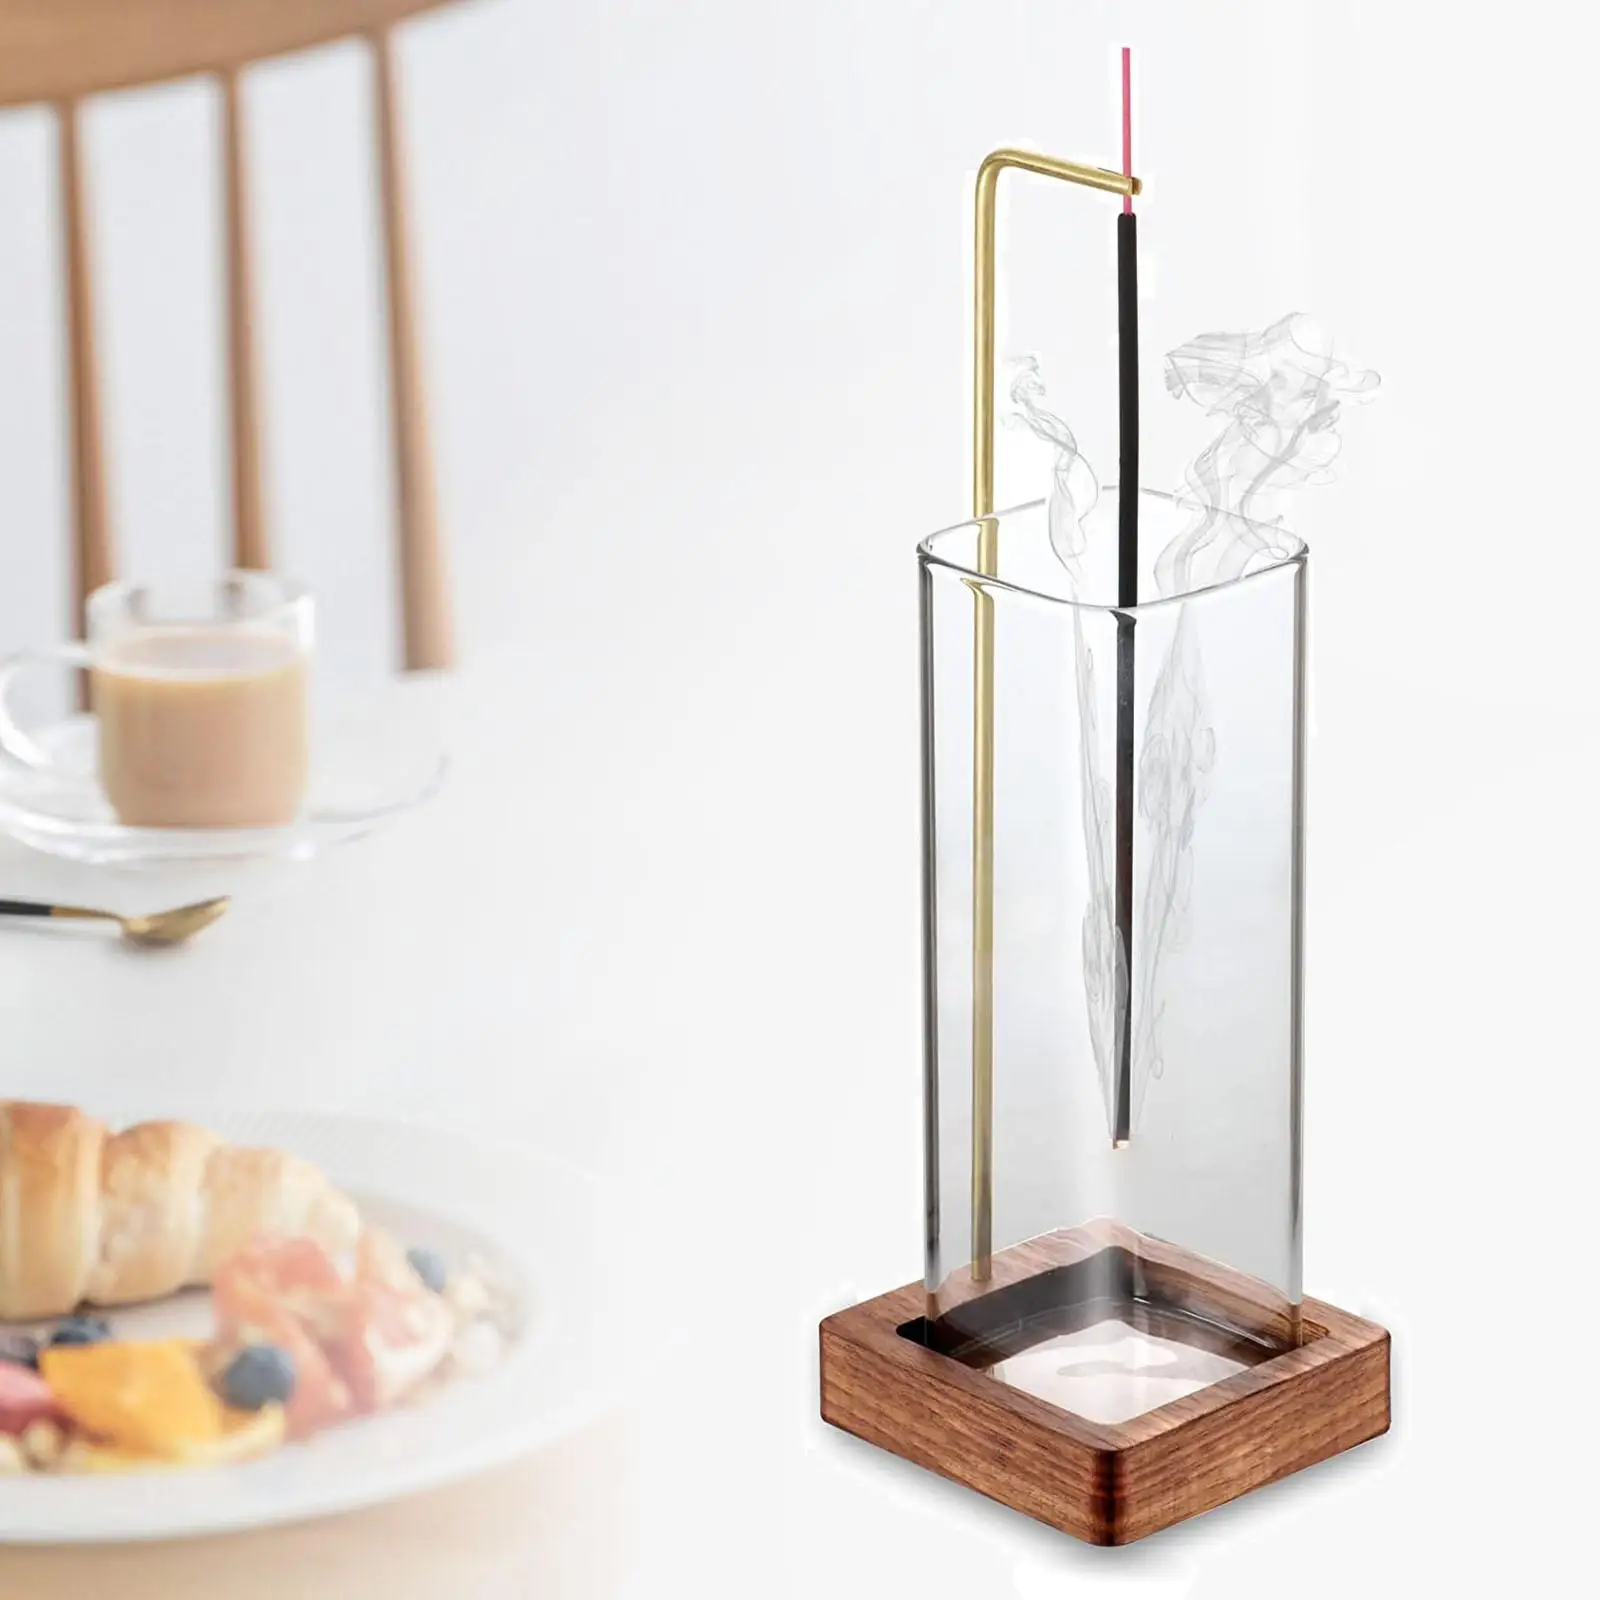 Incense Holder for Sticks with Glass Collector Incense Burner Incense Tray for Meditation Bedroom Desktop Tea House Office